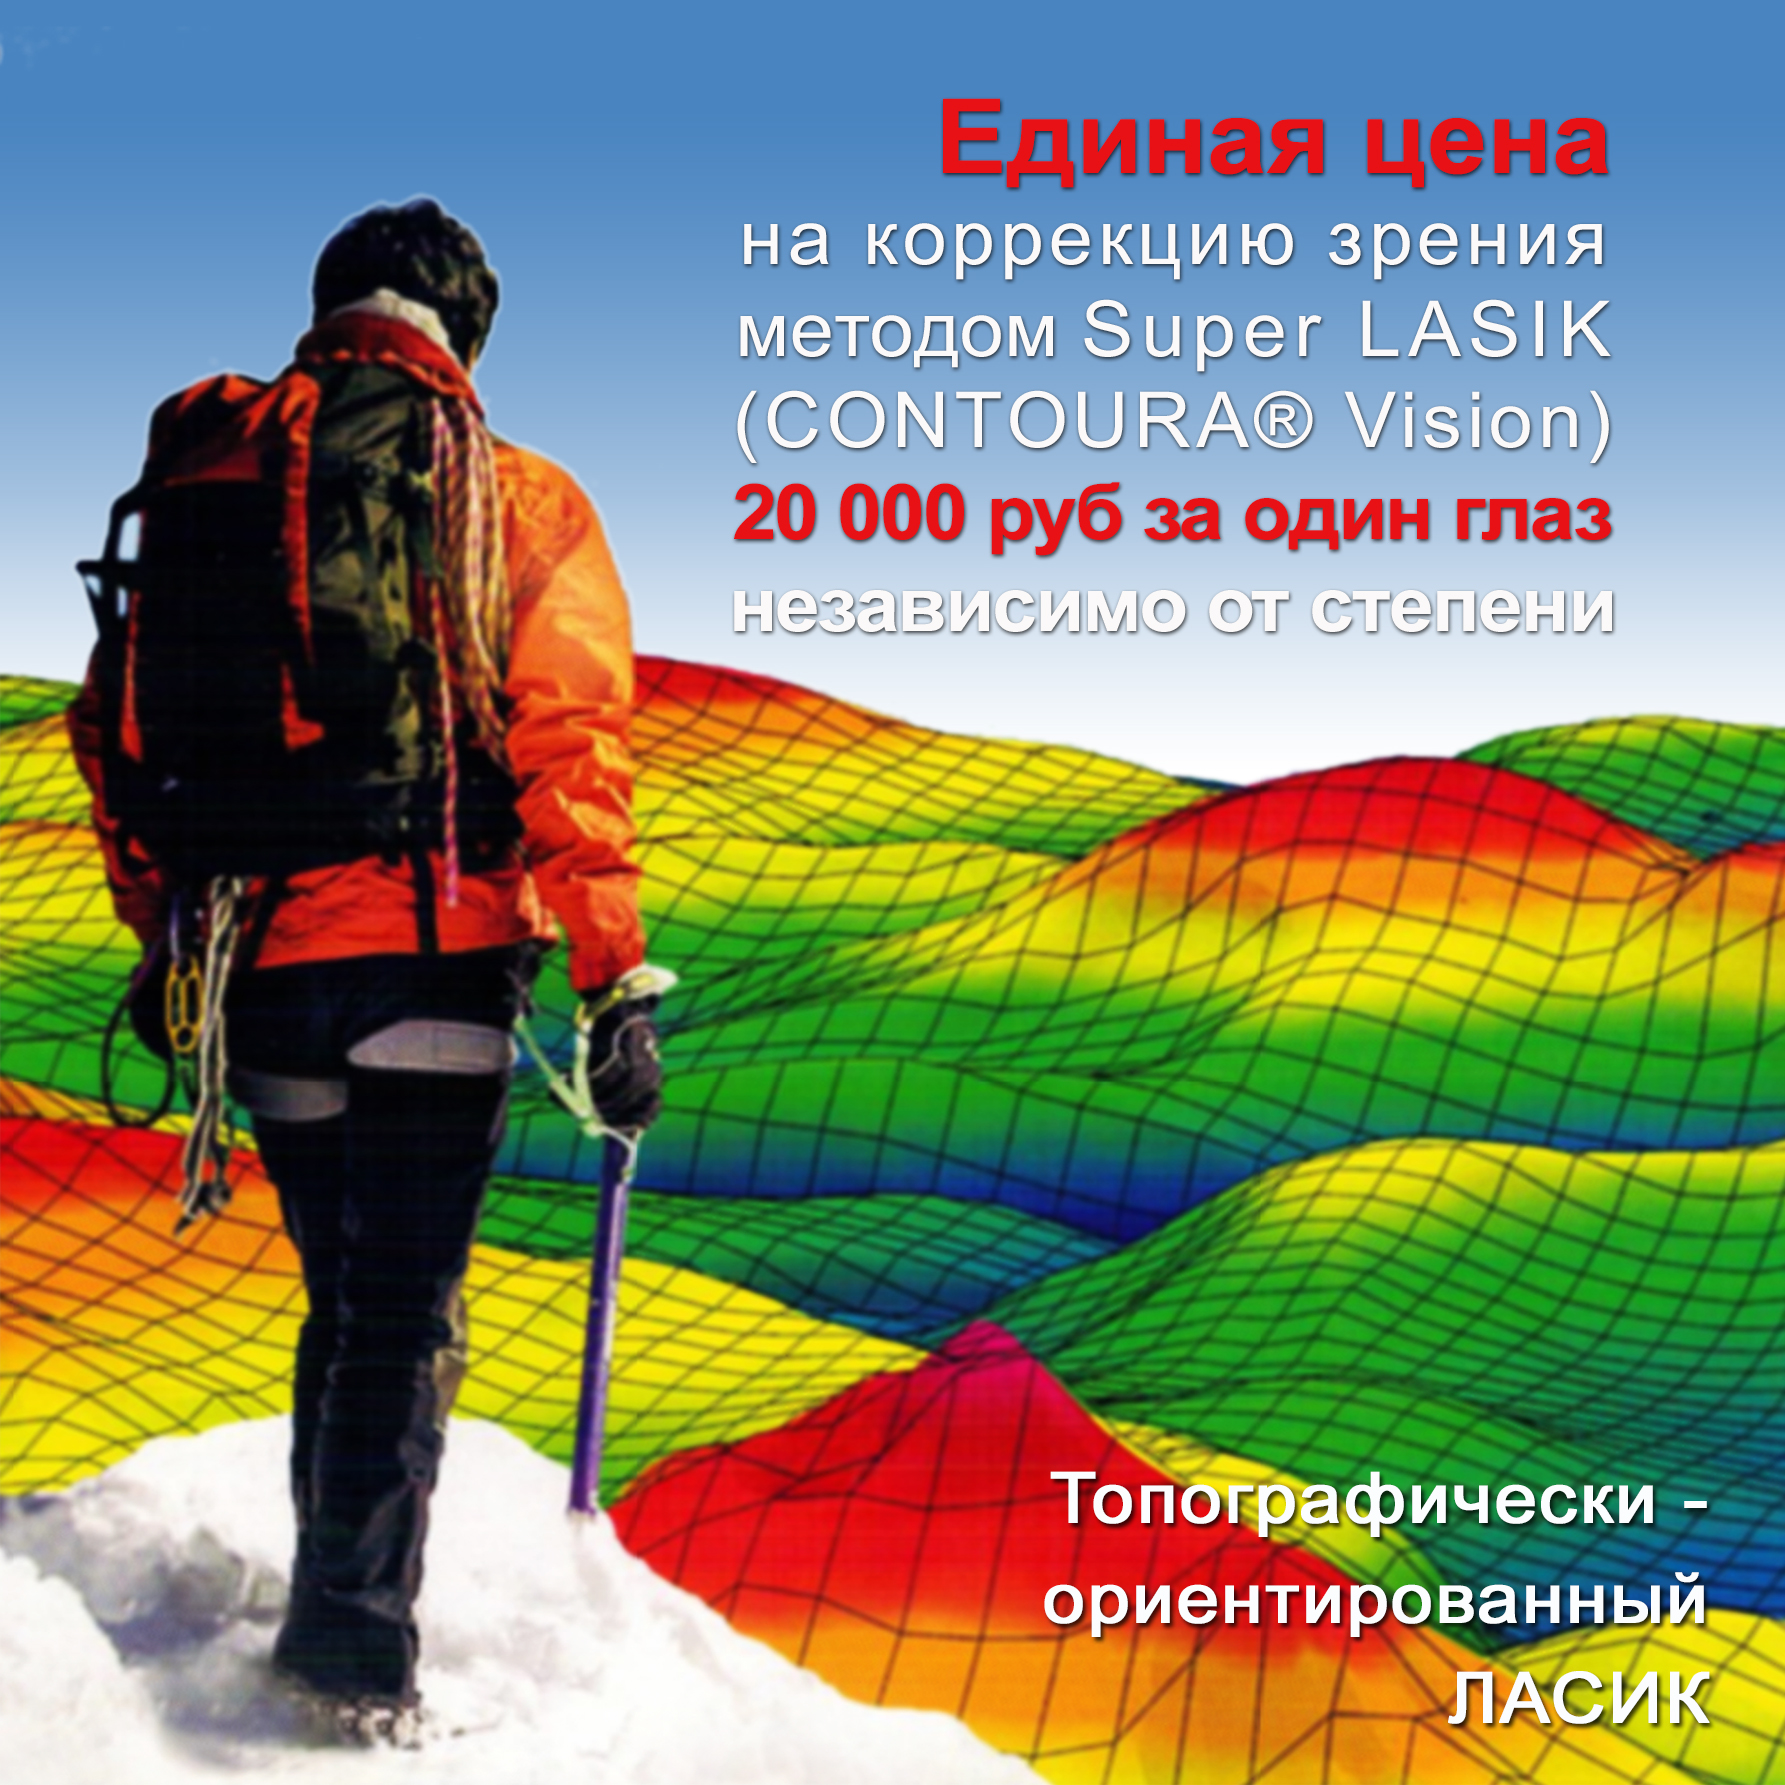 АКЦИЯ! С 1 мая Коррекция зрения по методу Super LASIK (CONTOURA® Vision) по цене LASIK 20 000 руб за один глаз